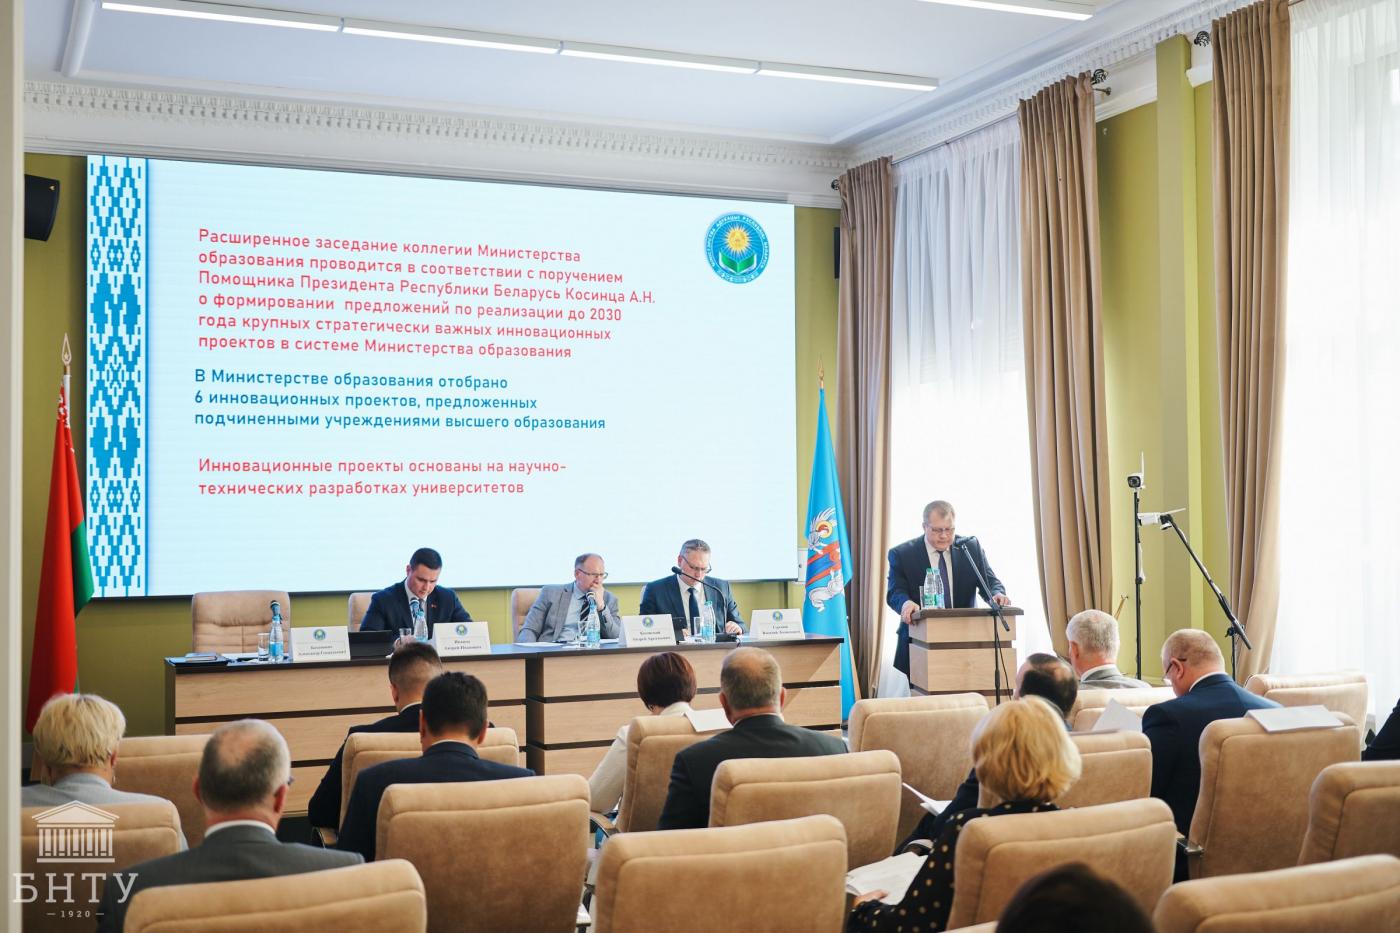 Расширенное заседание коллегии Министерства образования Республики Беларусь прошло в БНТУ